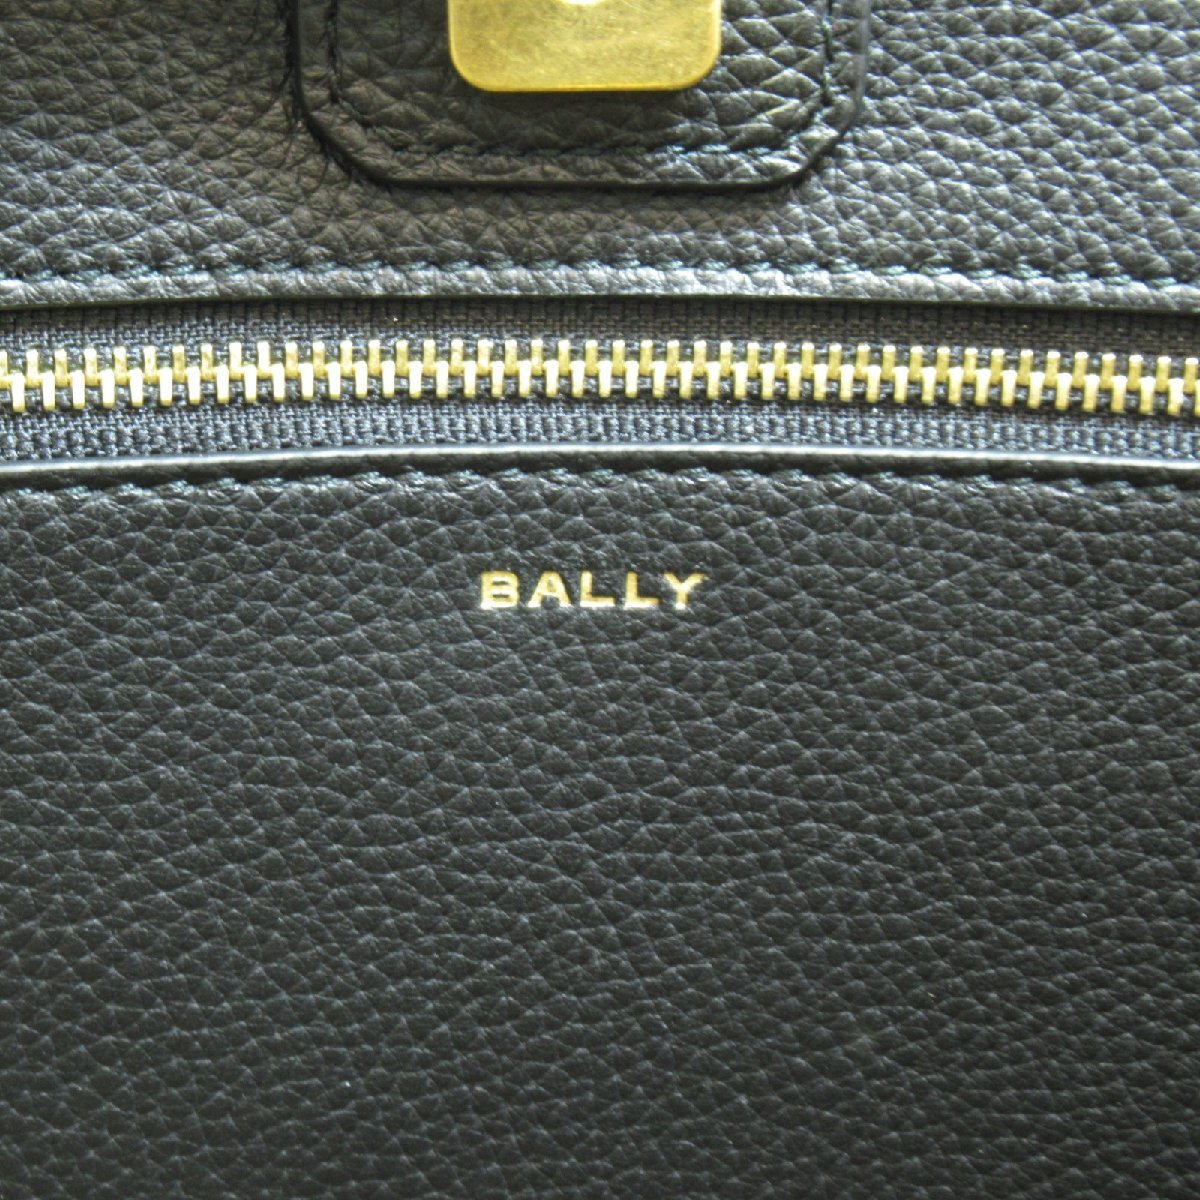  Bally большая сумка BAR KEEP ON NS бренд off BALLY ткань большая сумка ткань / кожа женский 